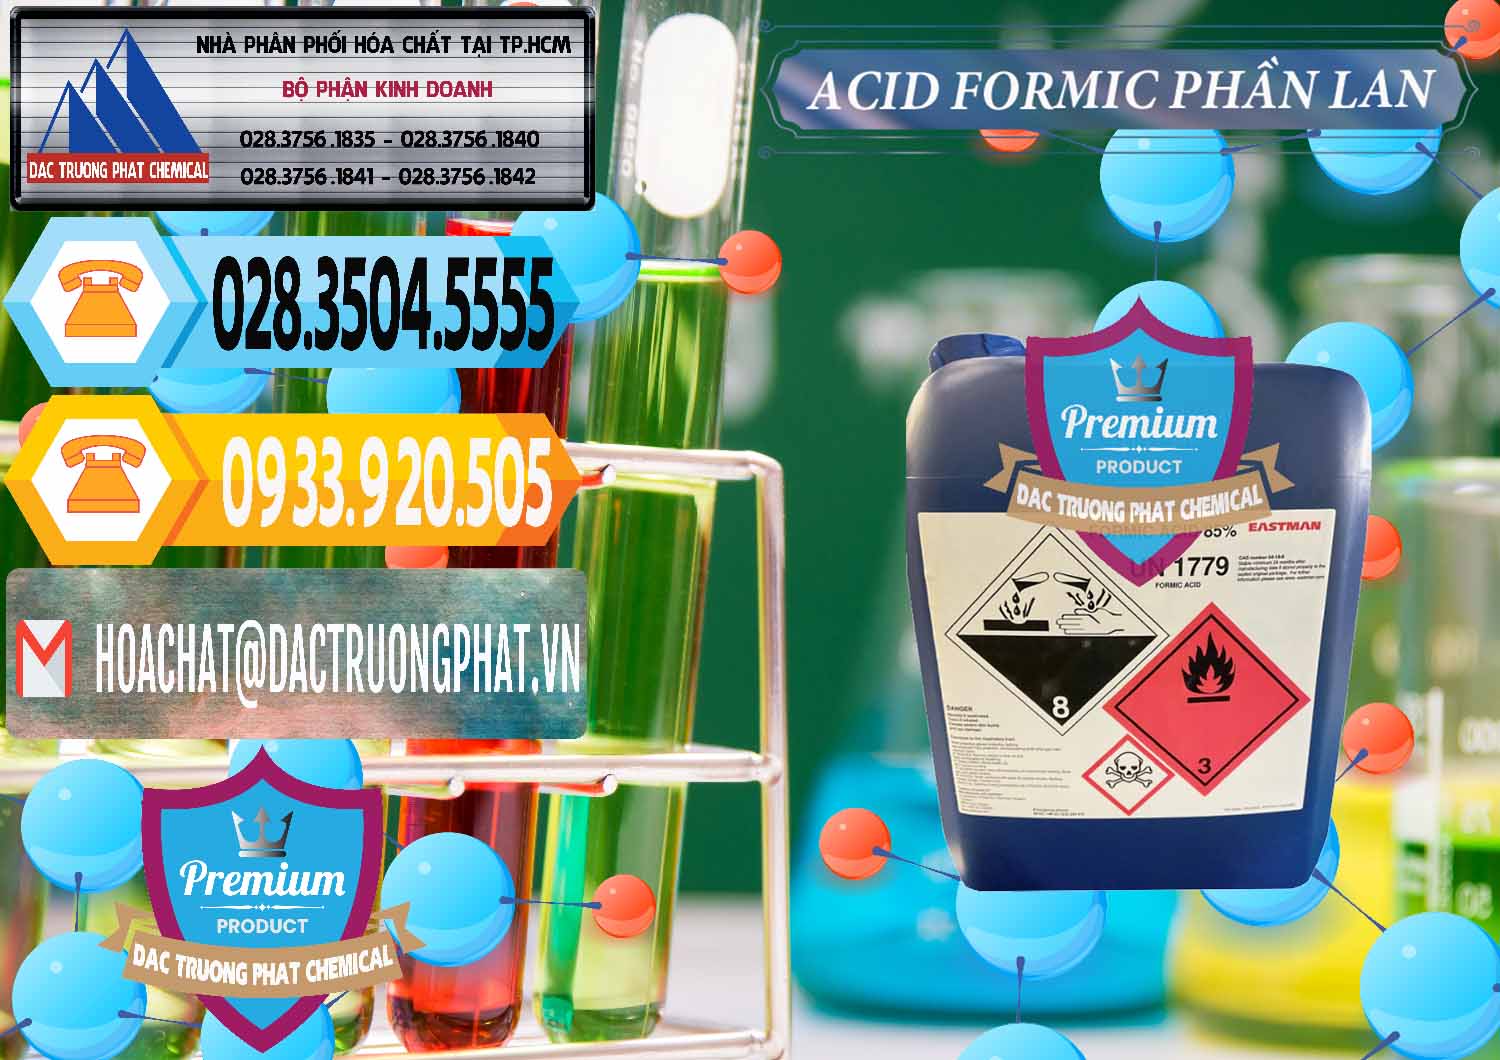 Cty kinh doanh ( bán ) Acid Formic - Axit Formic Phần Lan Finland - 0376 - Nơi chuyên cung ứng - phân phối hóa chất tại TP.HCM - hoachattayrua.net